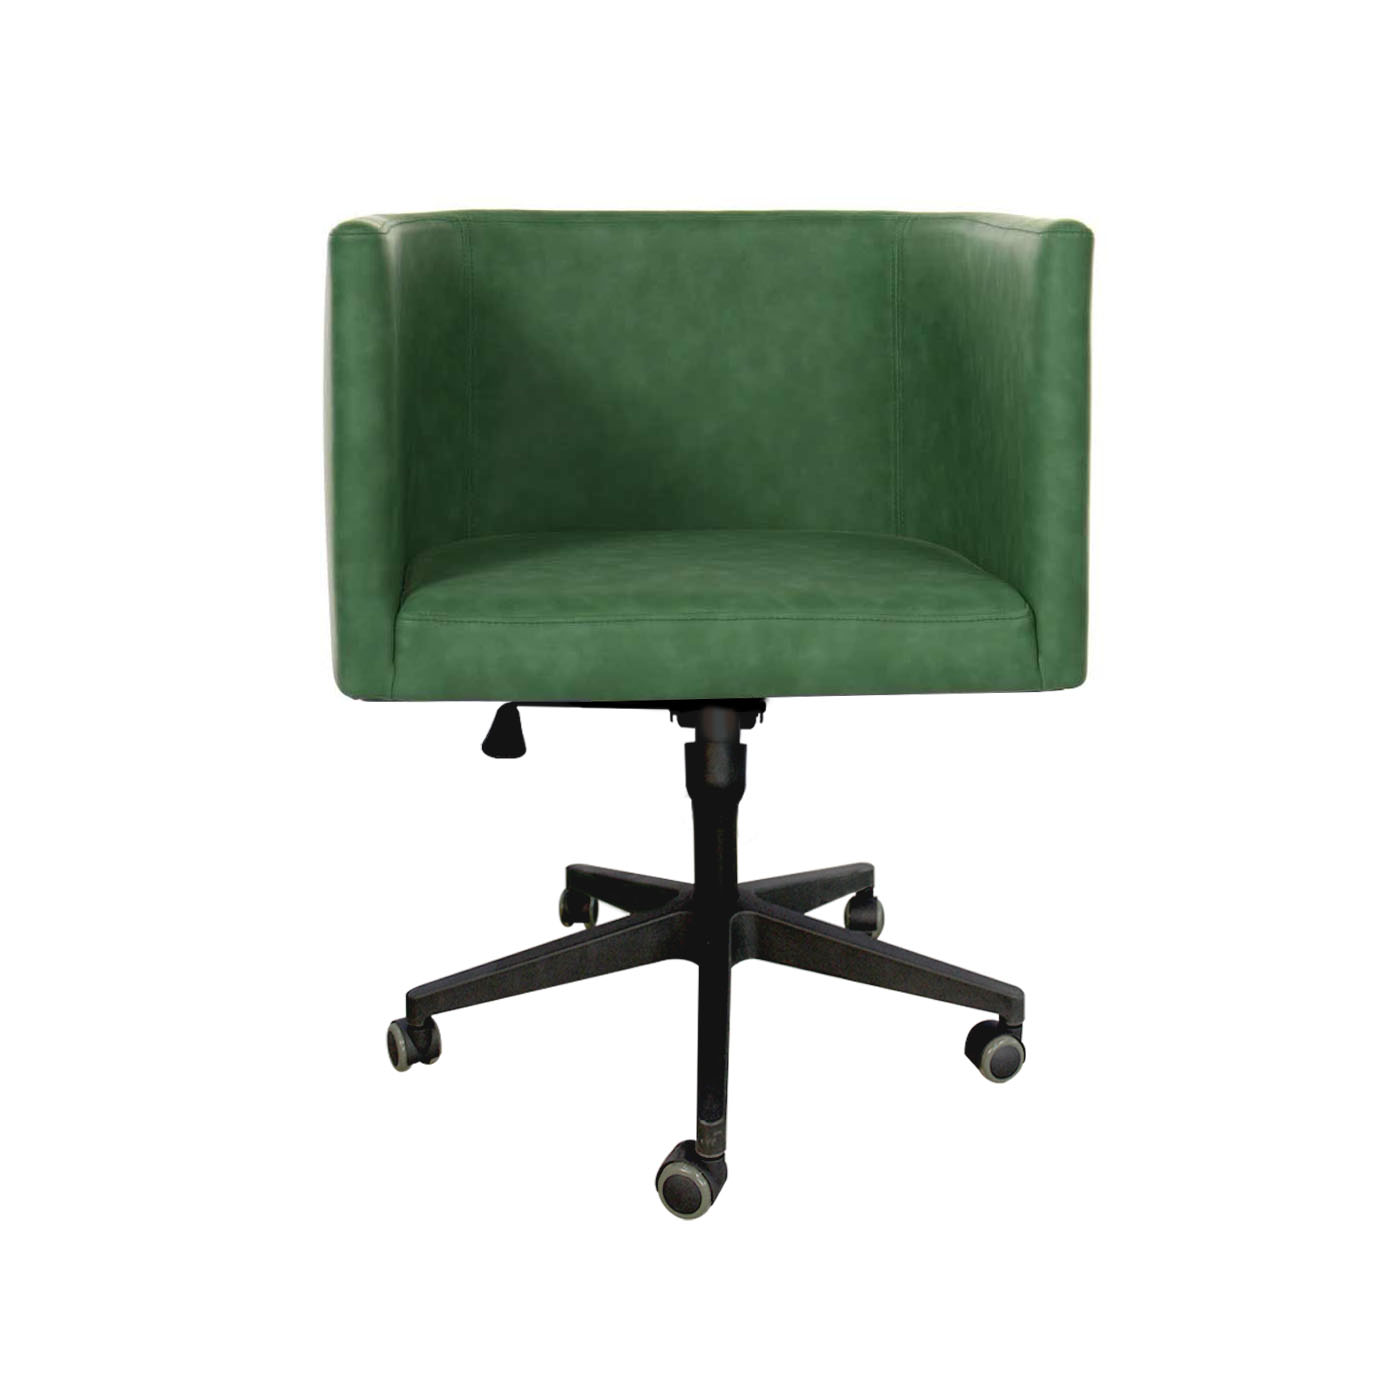 Dalian Basil Green Office Chair